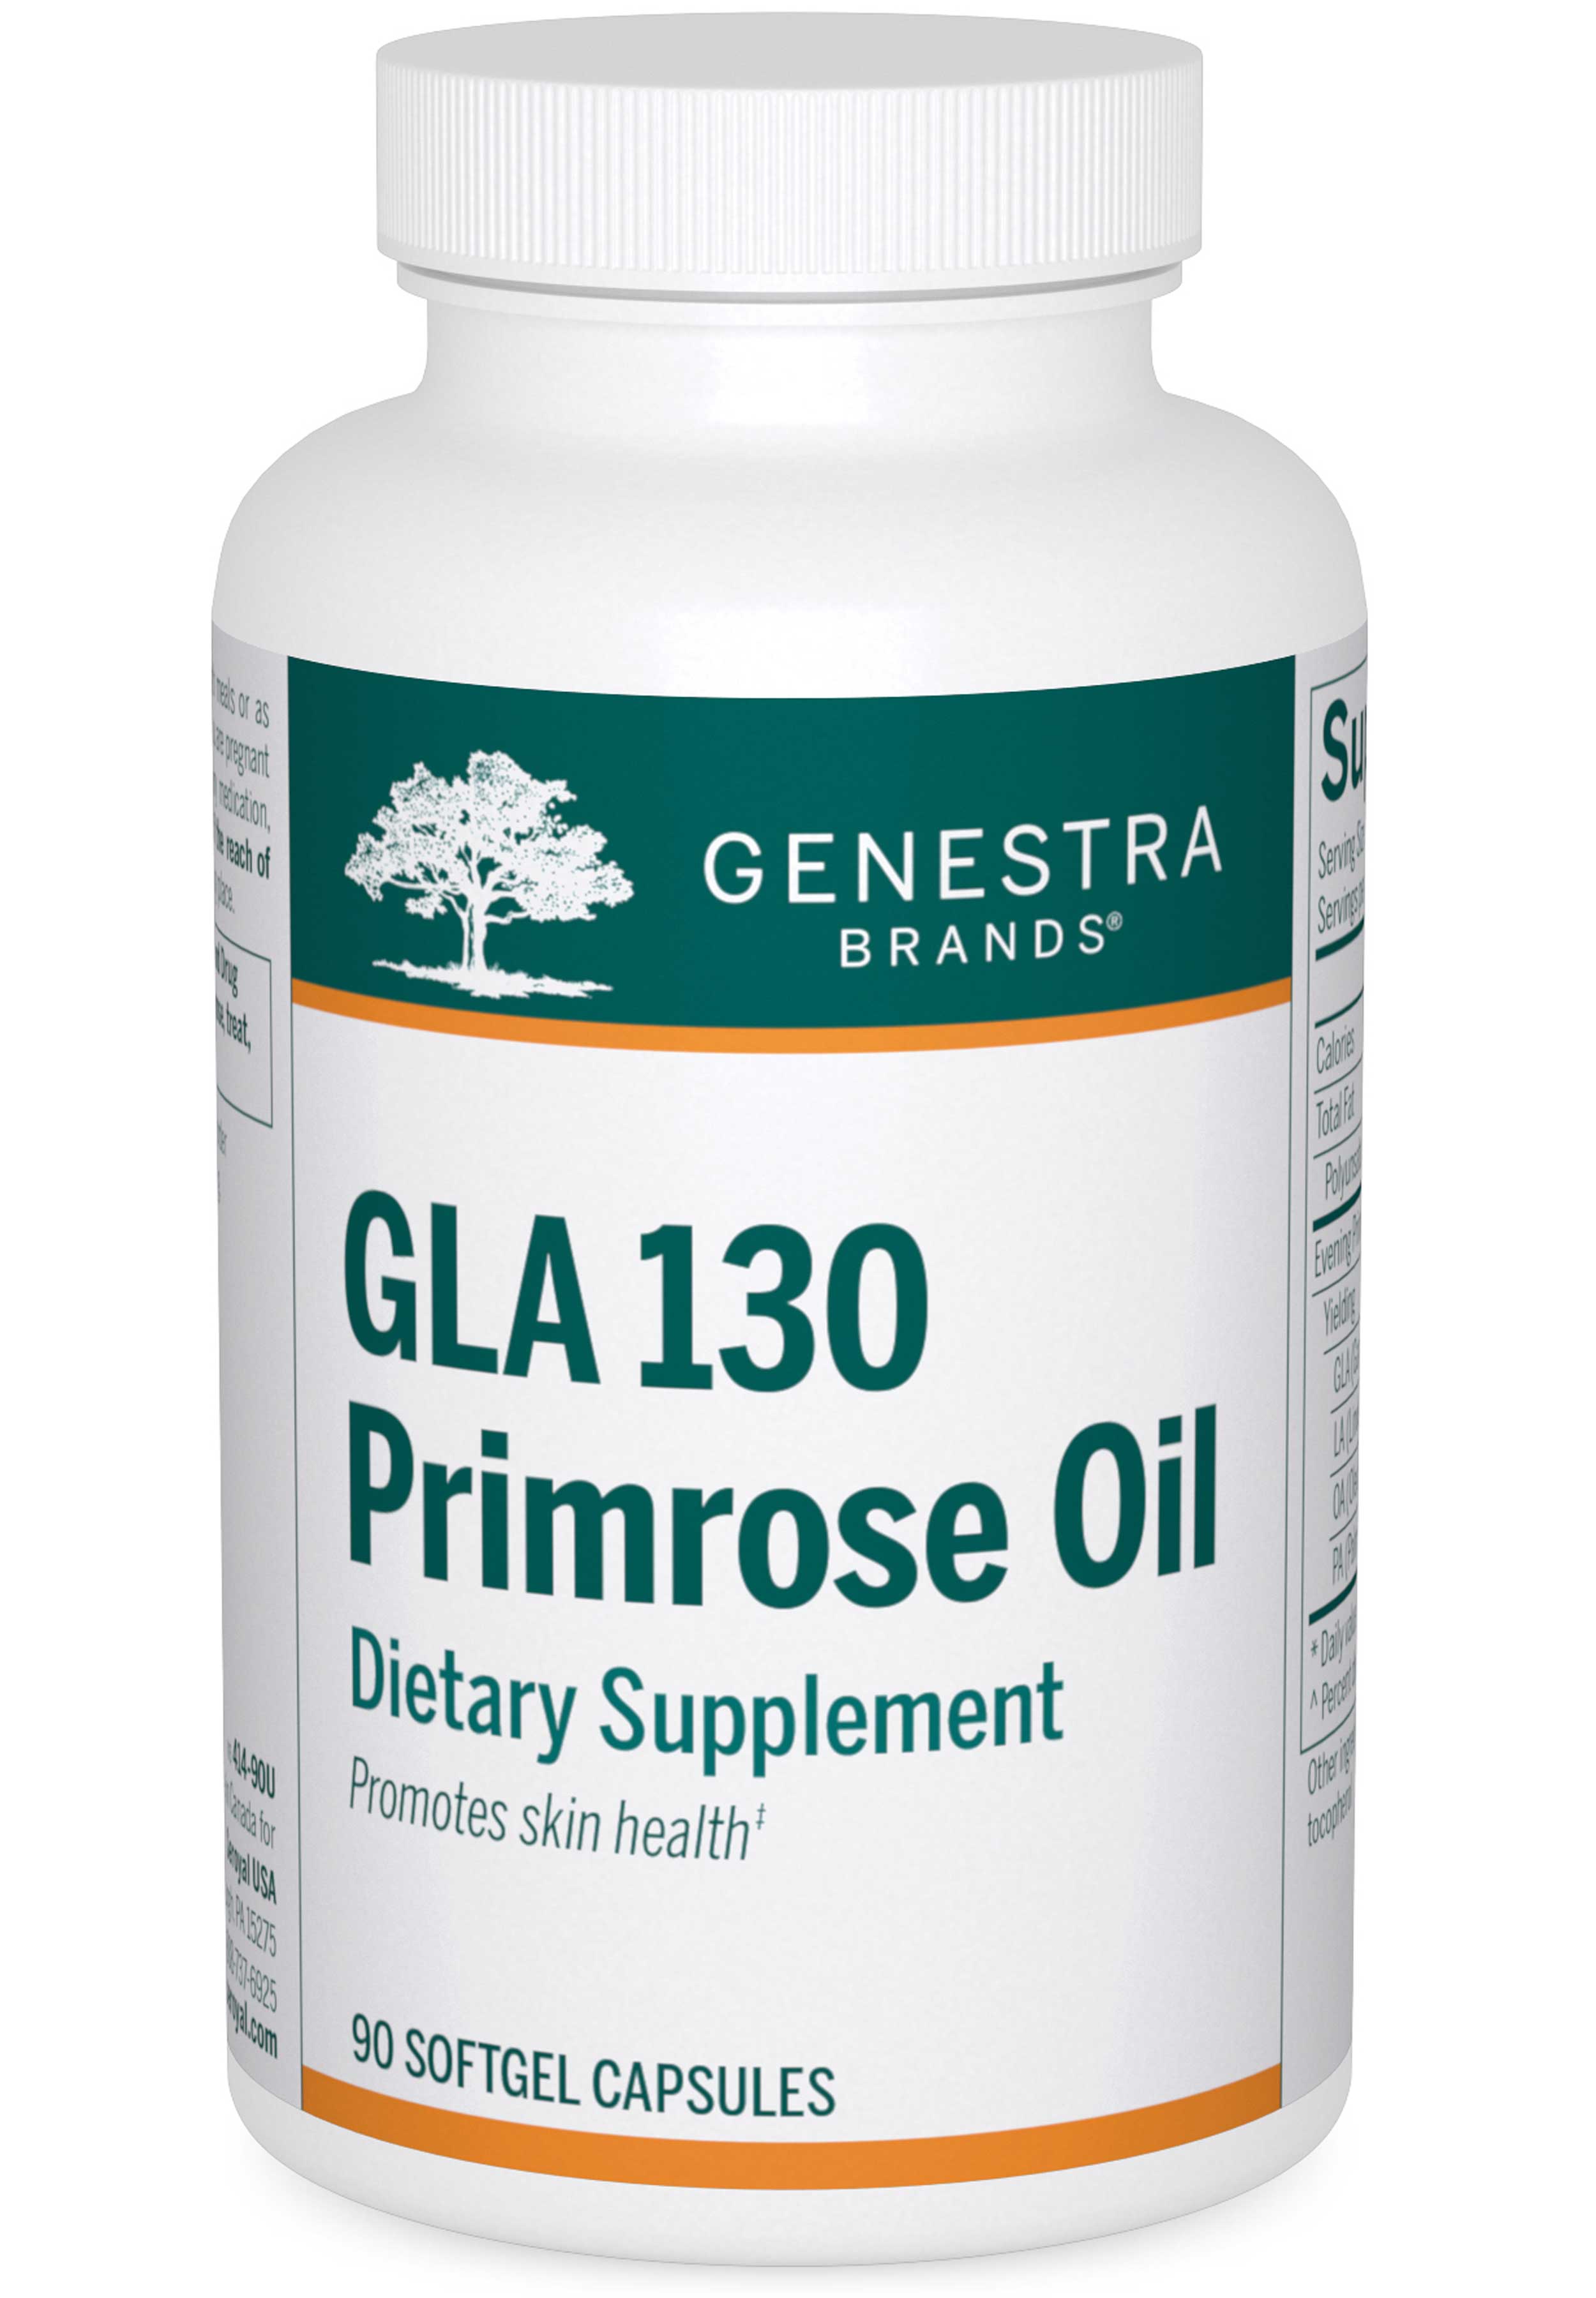 Genestra Brands GLA 130 Primrose Oil